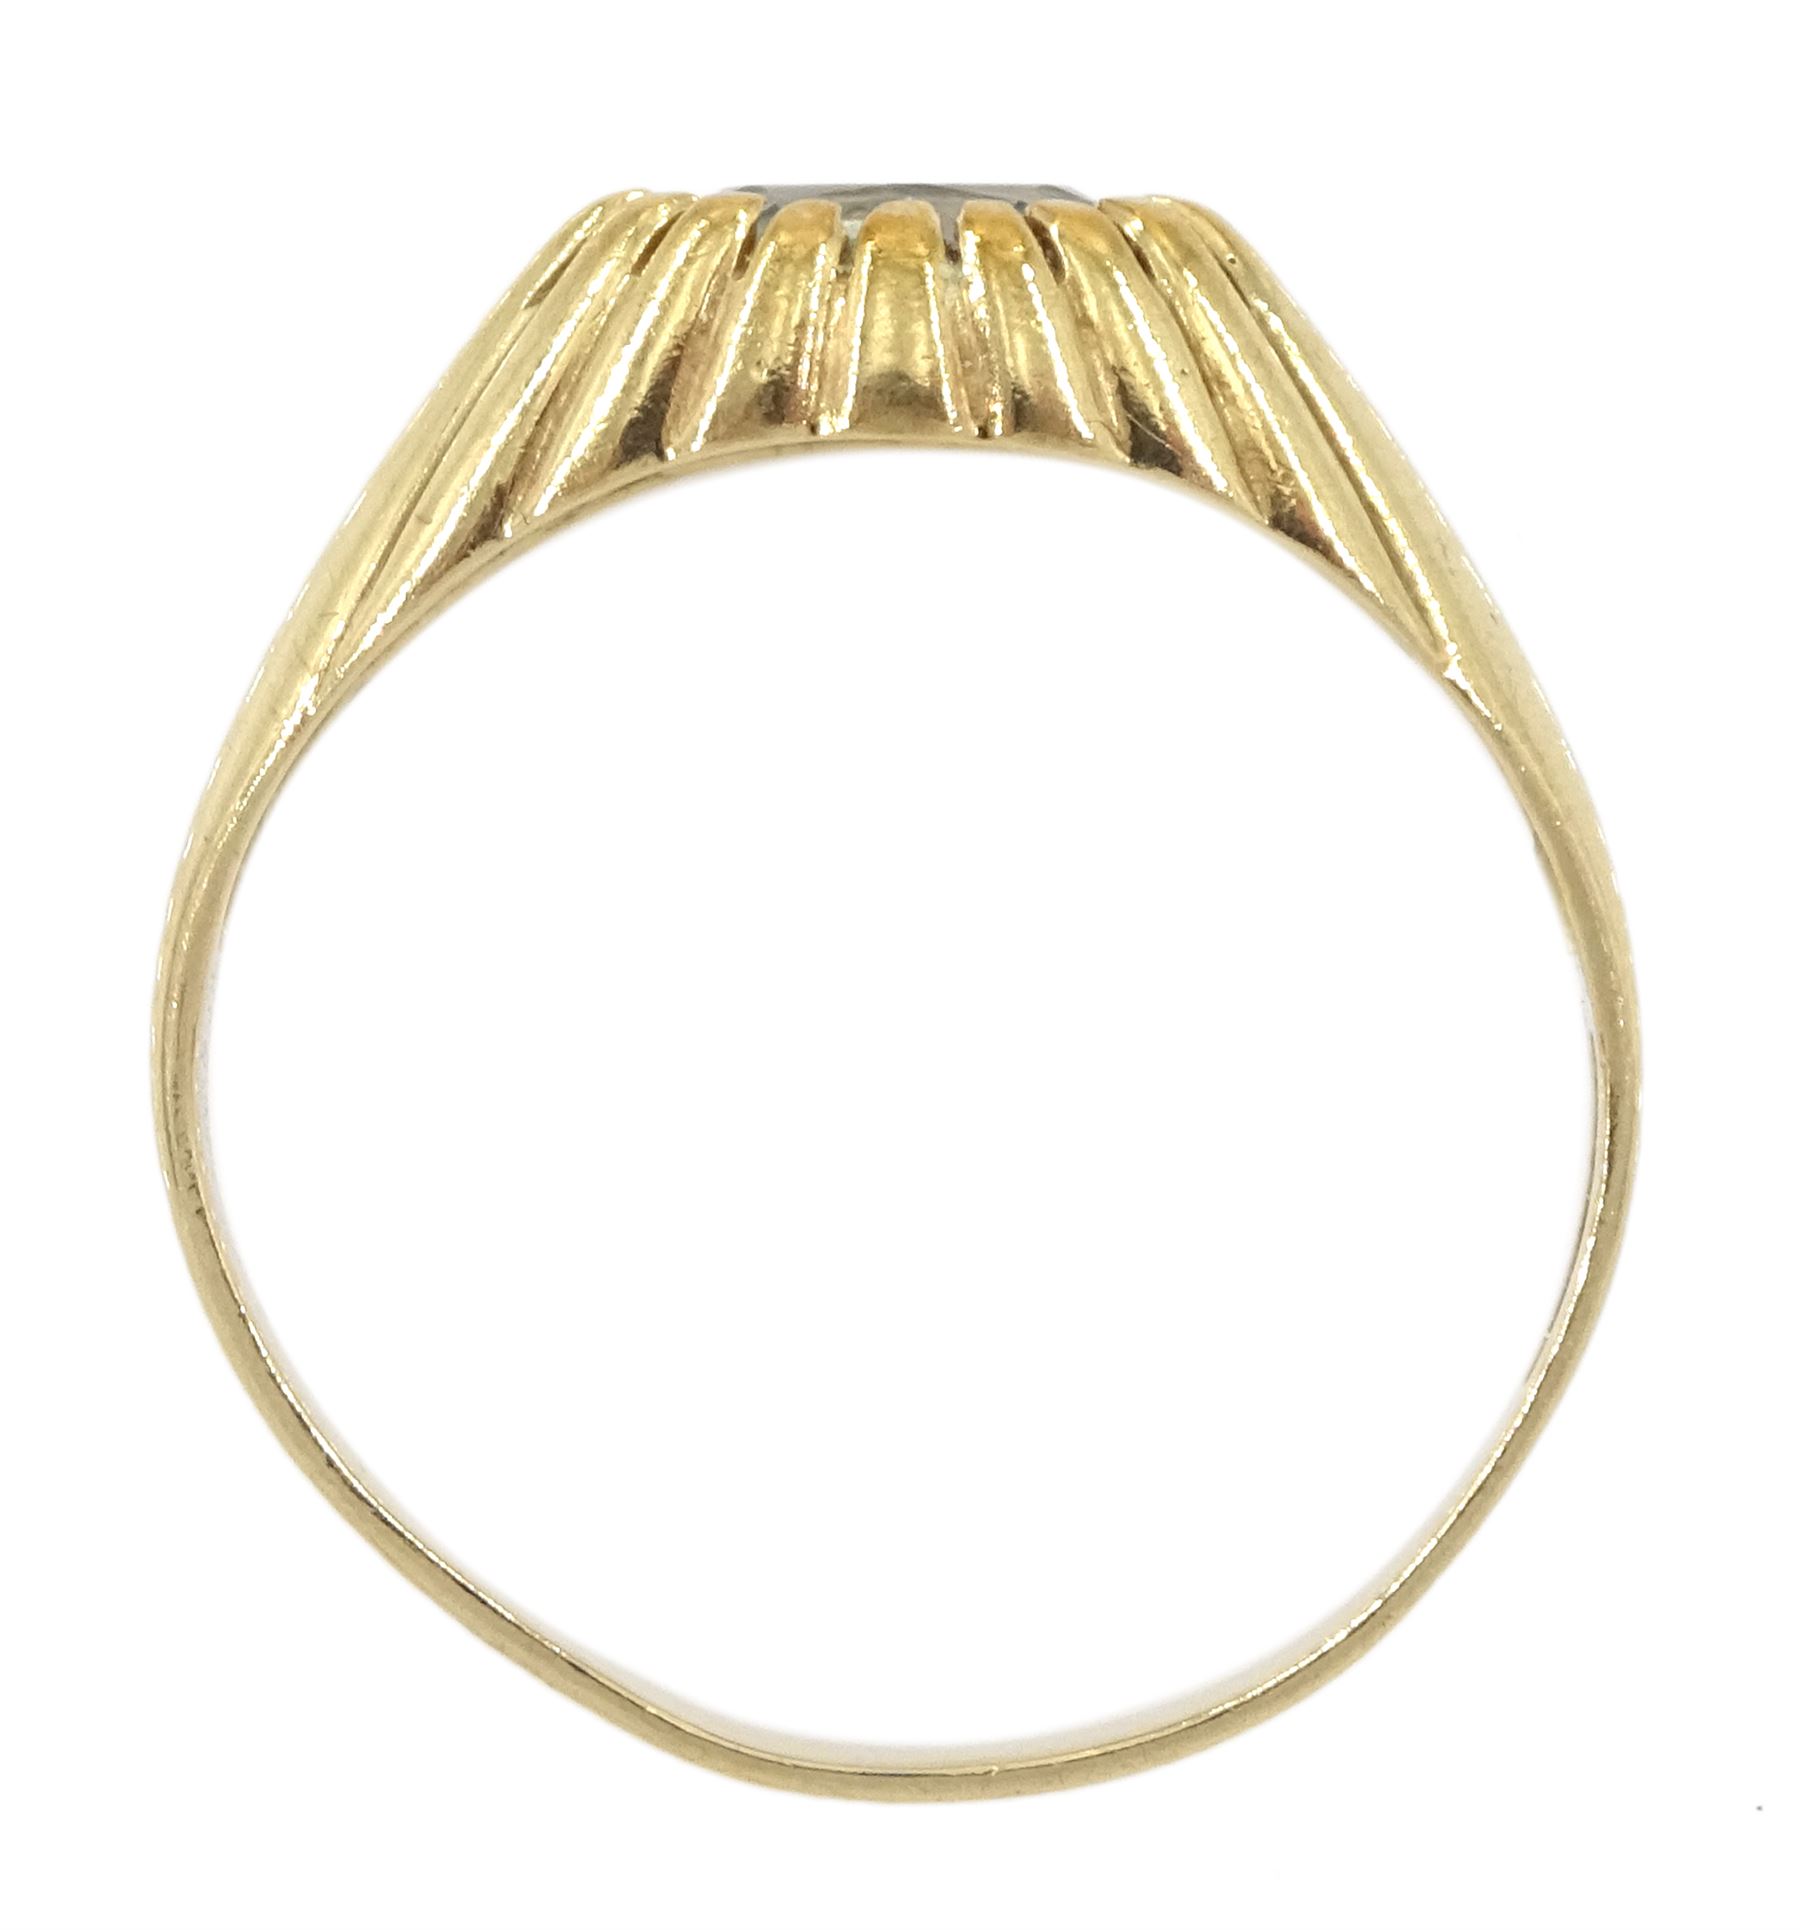 9ct gold single stone oval aquamarine ring - Image 4 of 4